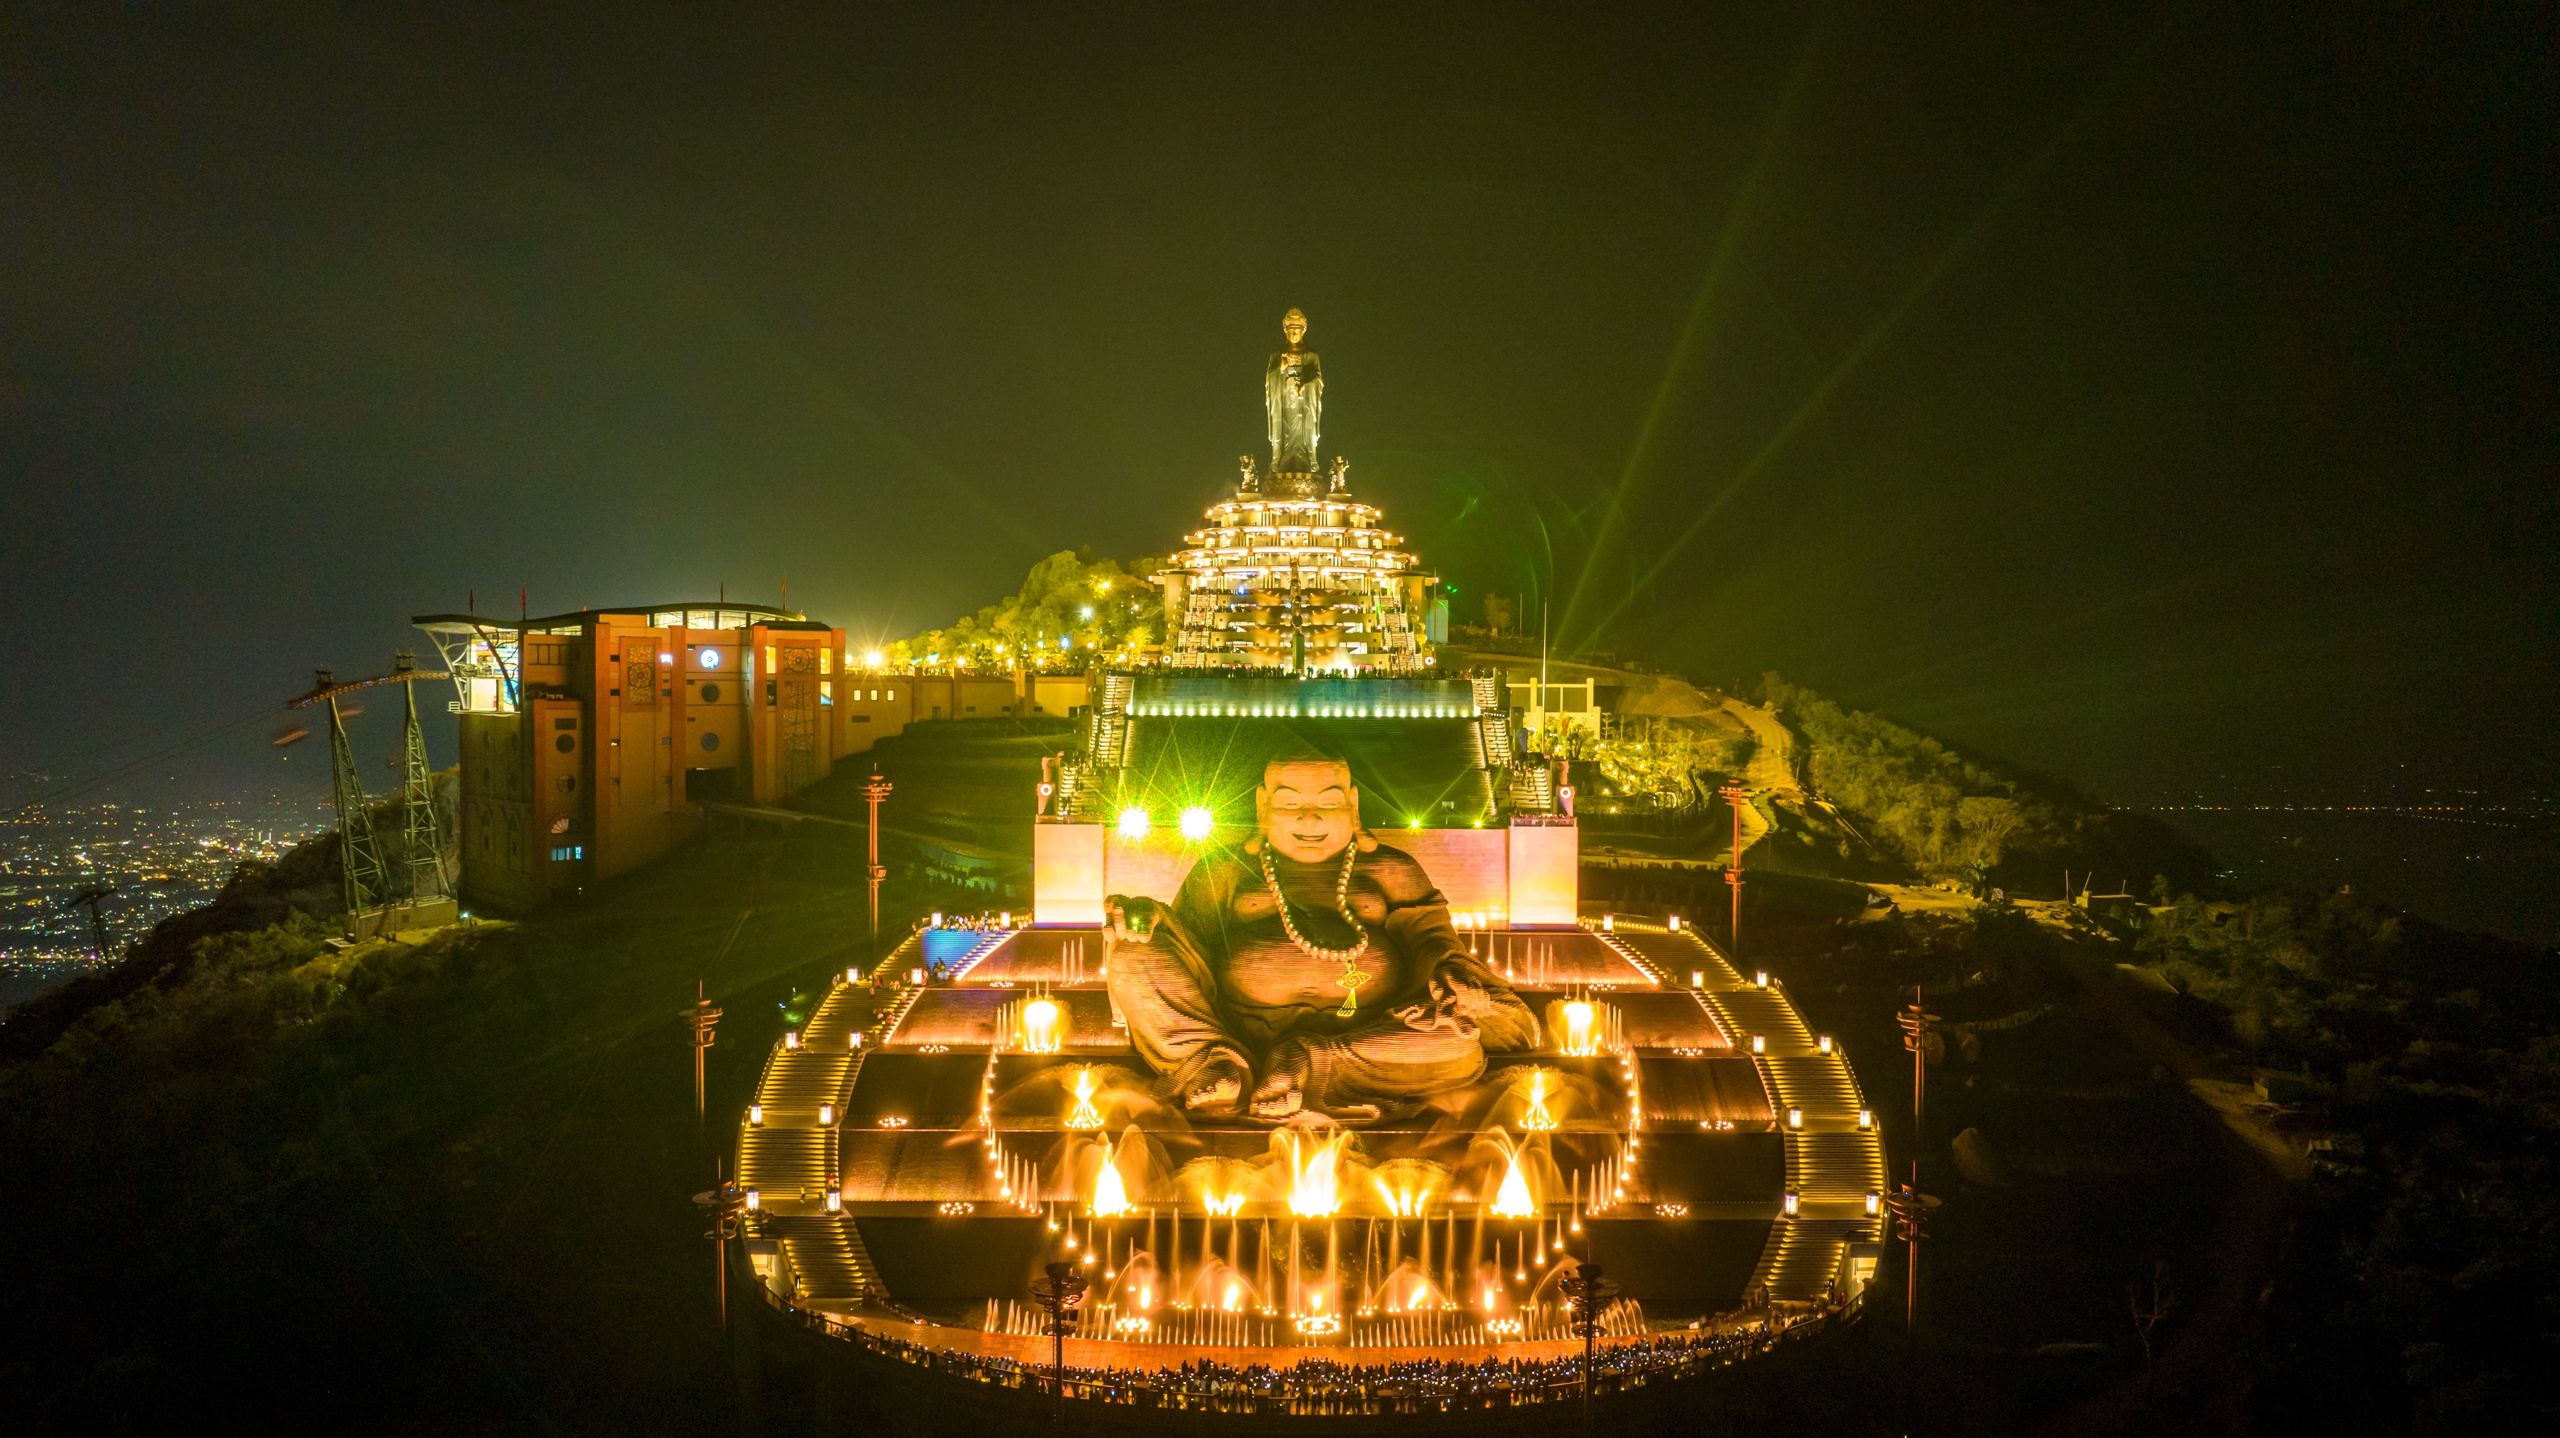 Hàng trăm ngàn đèn đăng thắp sáng đại lễ dâng đăng rằm tháng giêng tại núi Bà Đen- Ảnh 5.